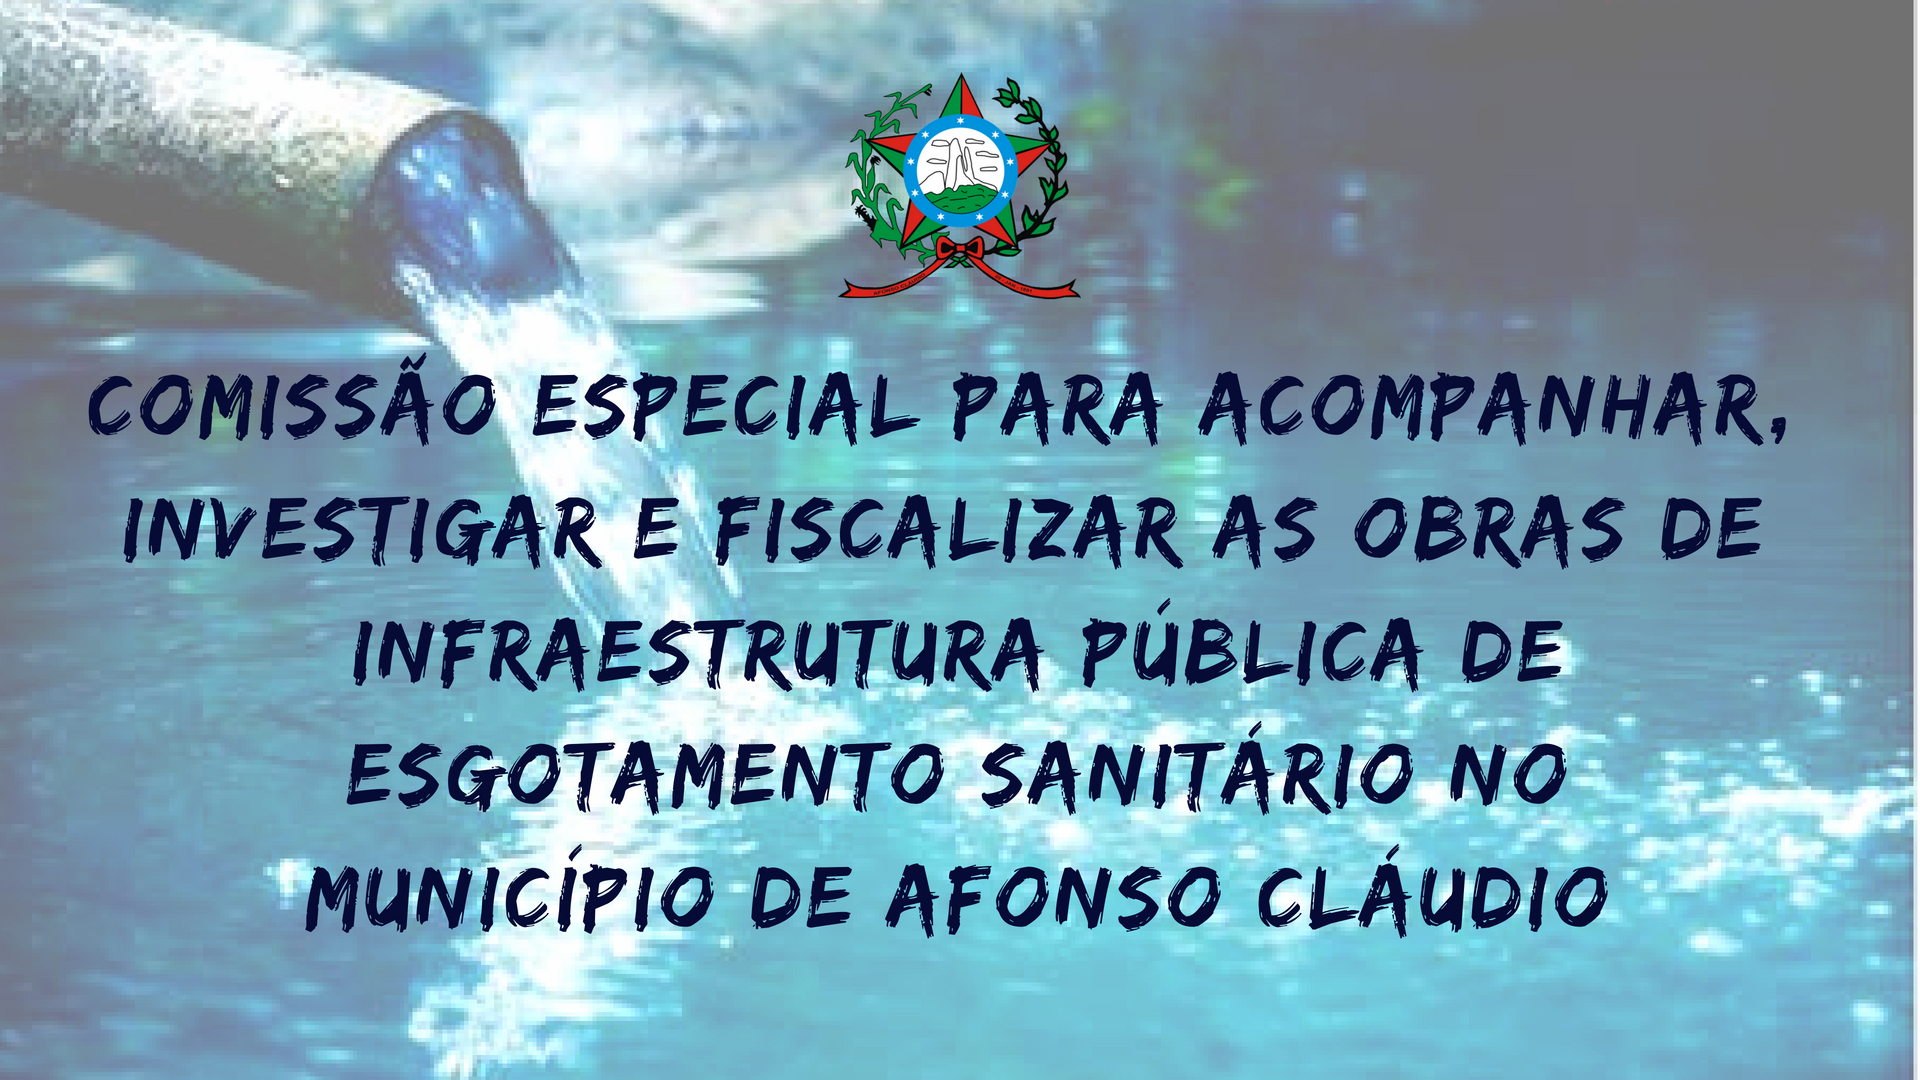 Comissão Especial Para Acompanhar, Investigar e Fiscalizar as Obras de Infraestrutura Pública de Esgotamento Sanitário no Município de Afonso Cláudio